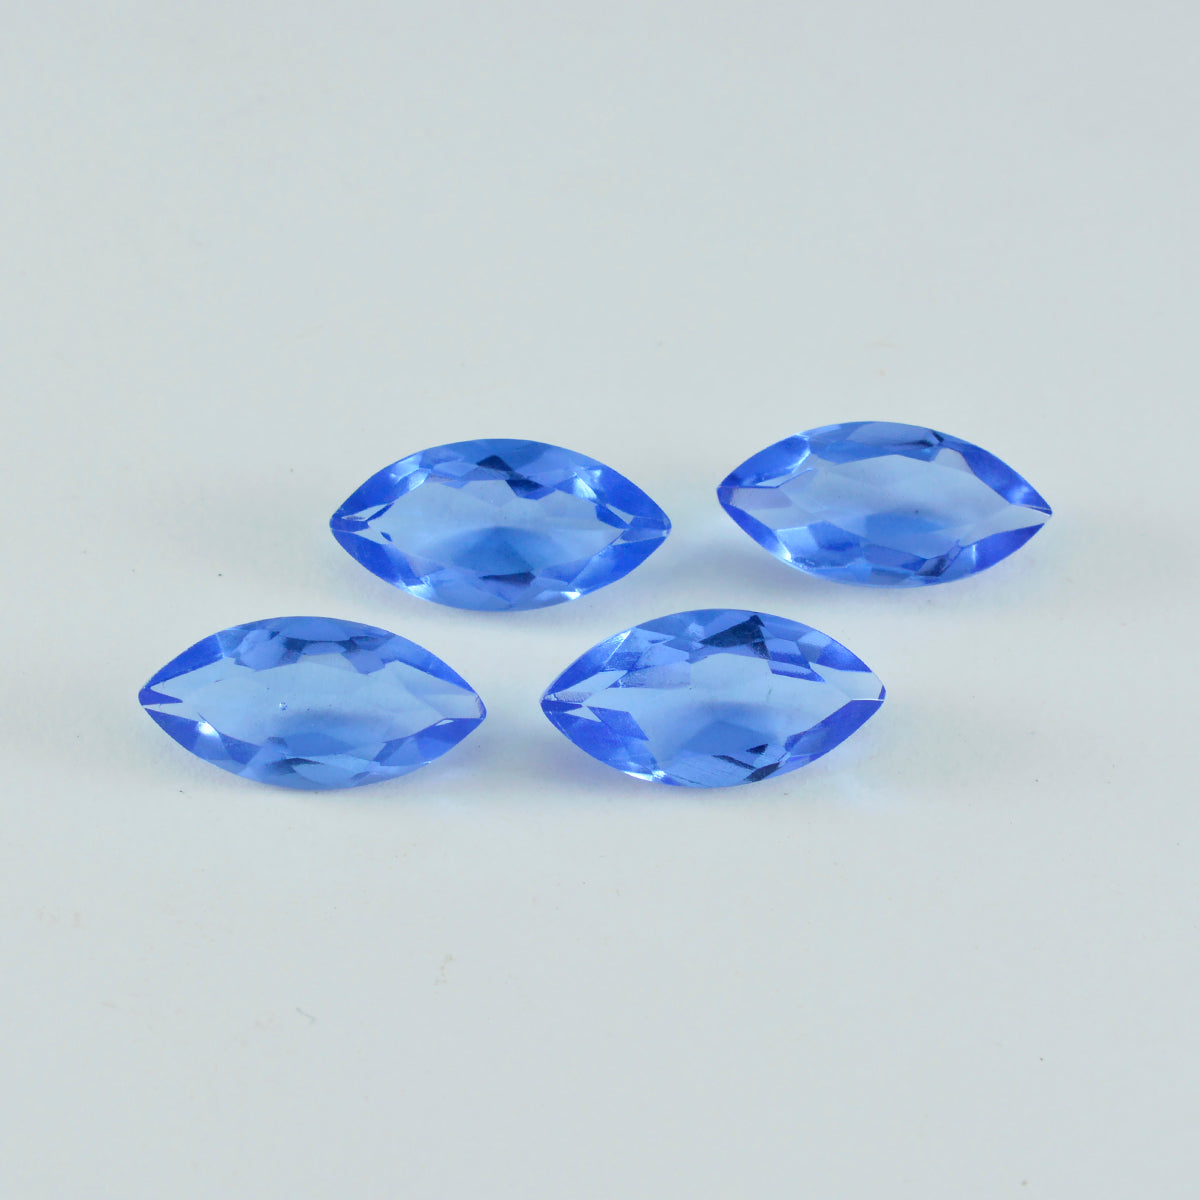 riyogems 1шт синий сапфир cz ограненный 10x20 мм форма маркиза качественный сыпучий драгоценный камень